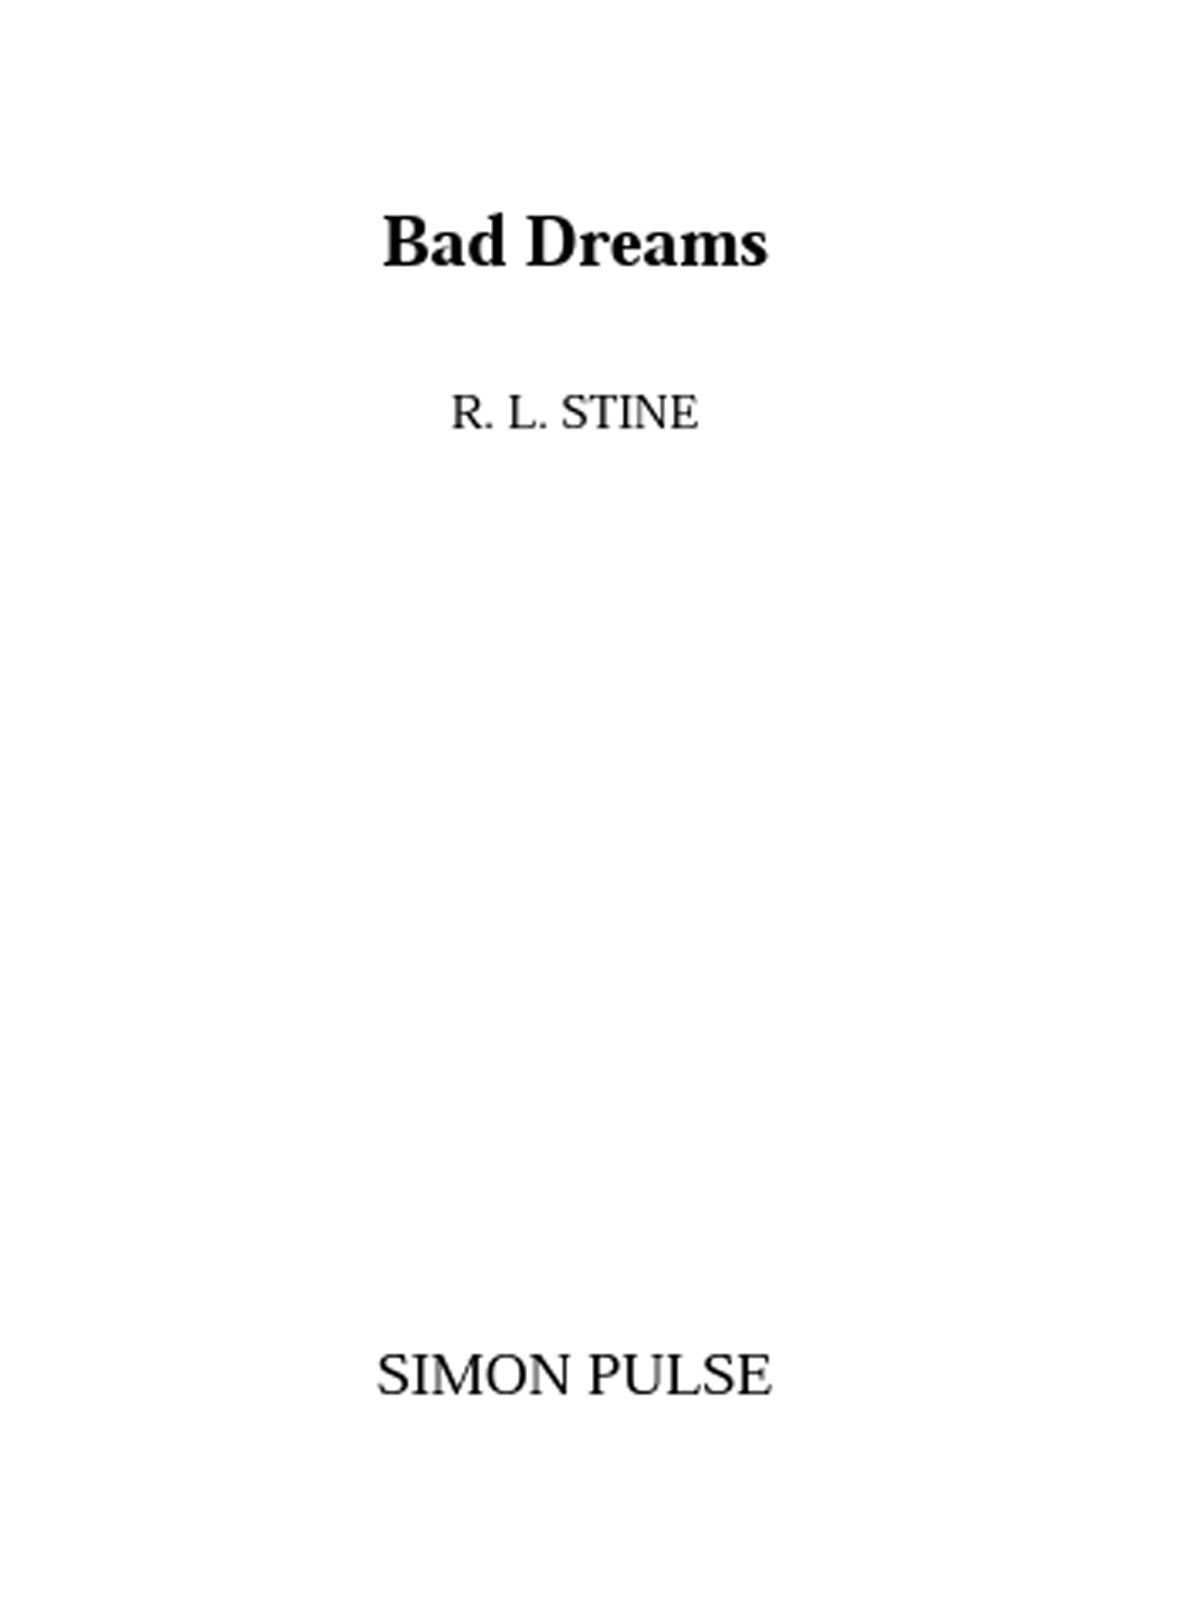 Bad Dreams (1994) by R.L. Stine